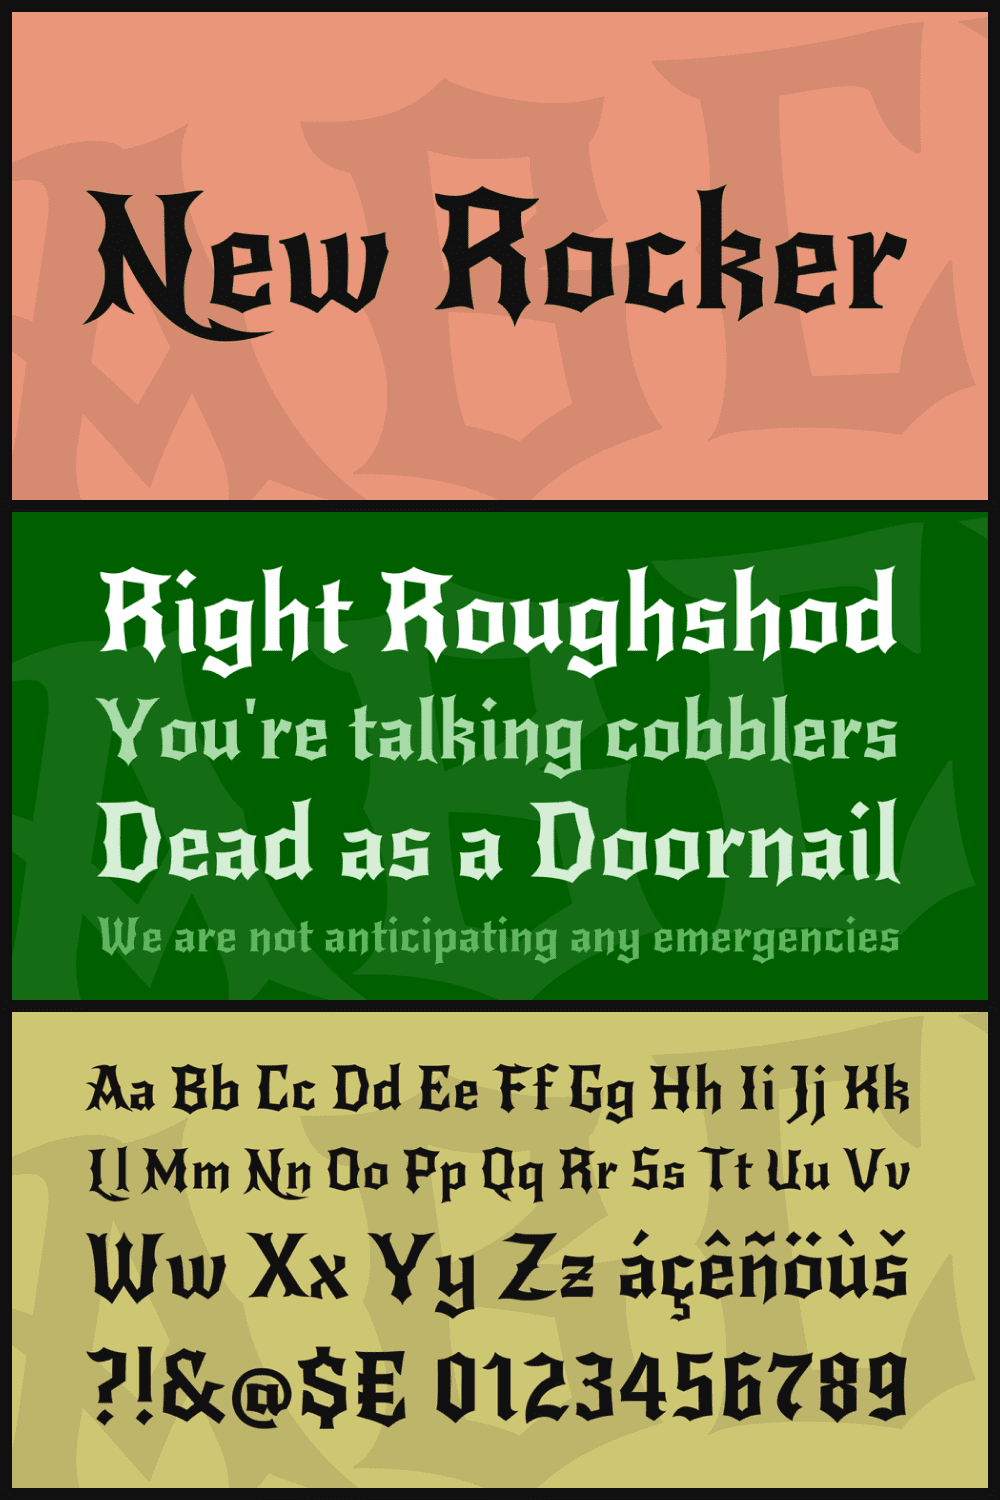 NewRocker is a loud, harsh, screaming font.